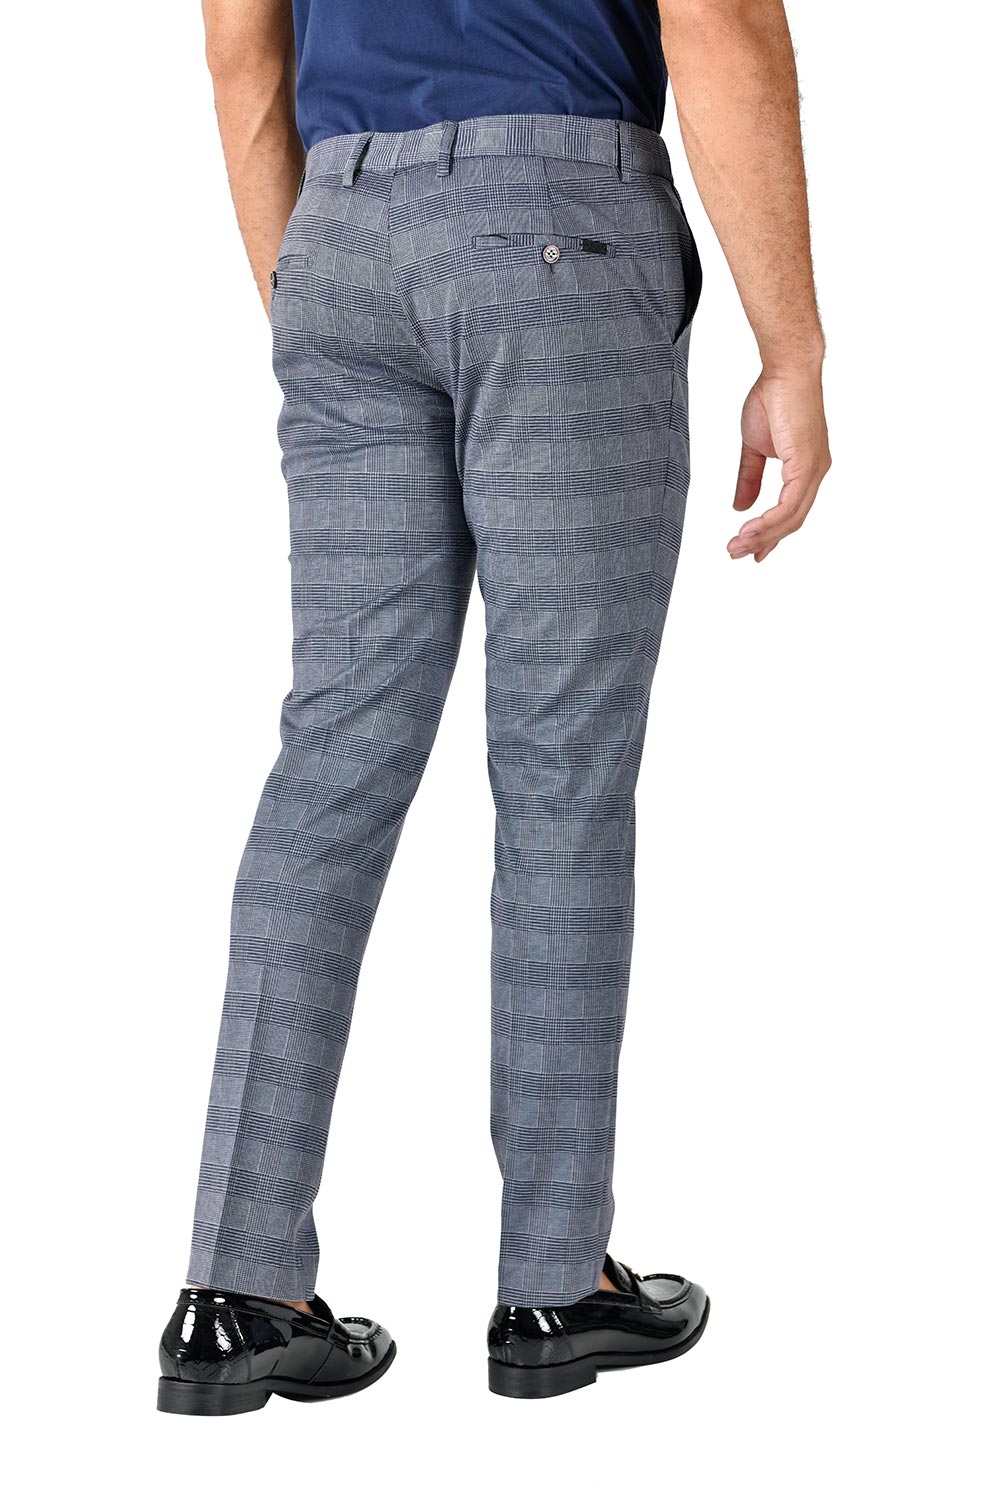 BARABAS men's checkered plaid grey chino dress pants CP132